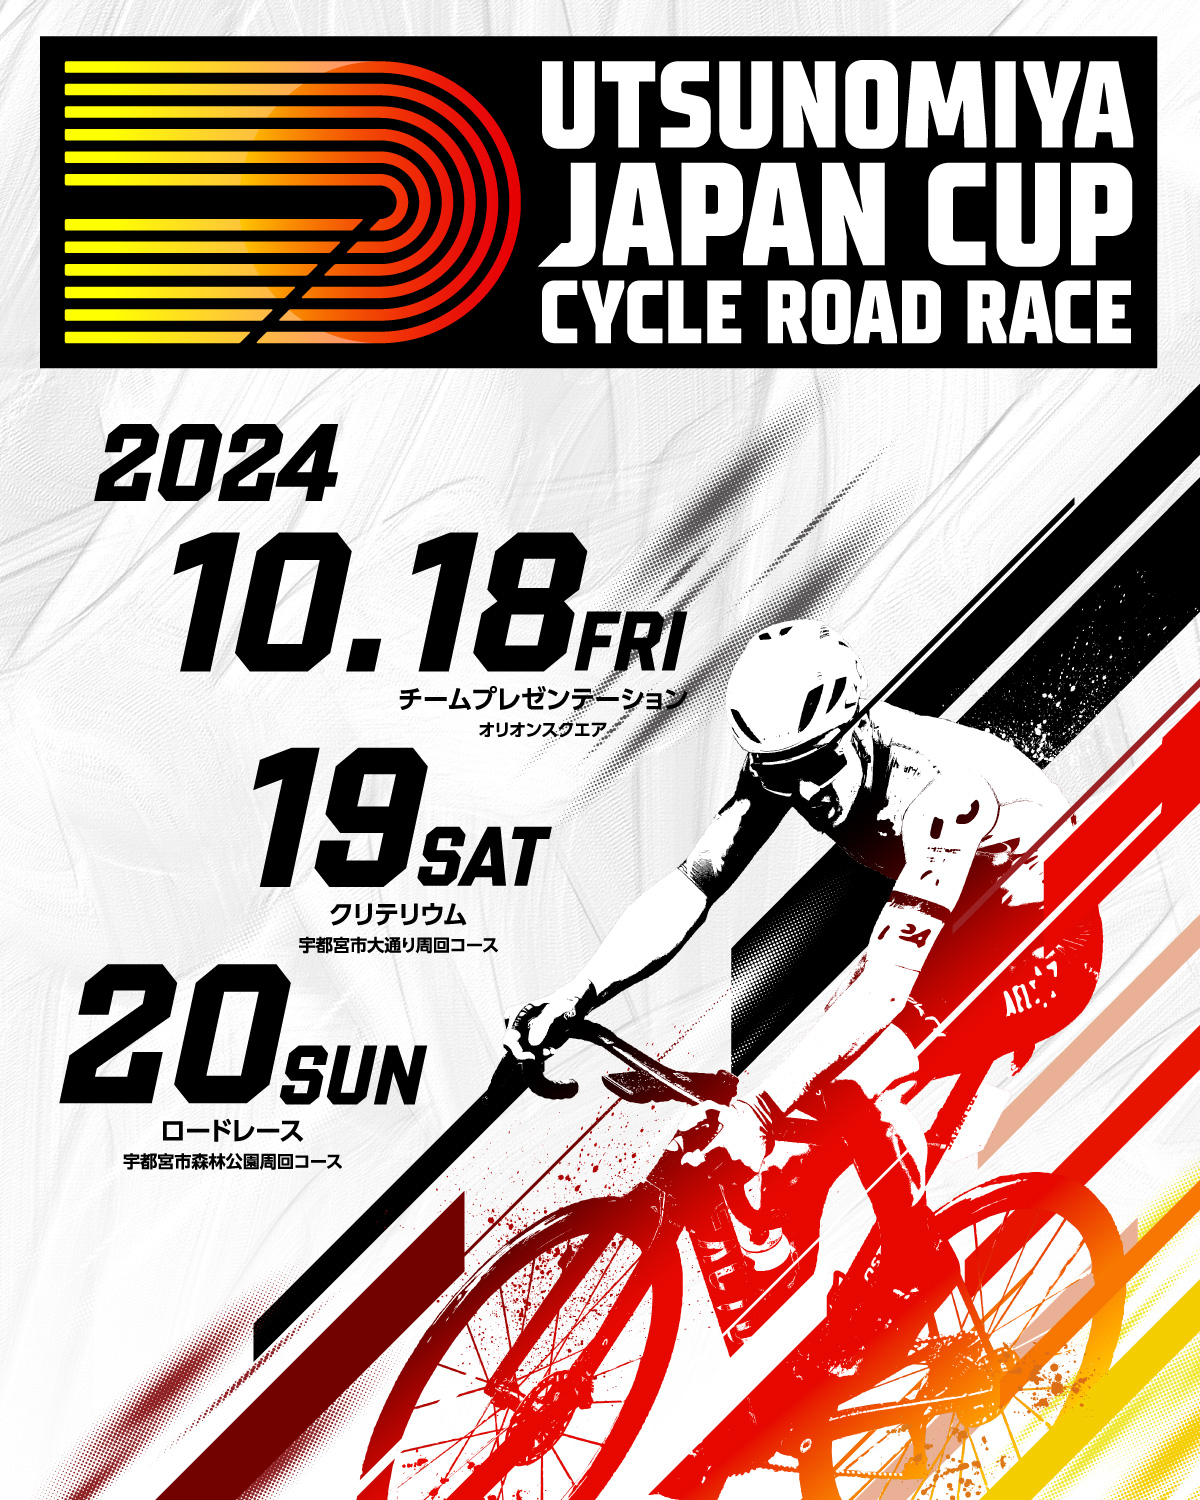 宇都宮ジャパンカップサイクルロードレース | UTSUNOMIYA JAPAN CUP CYCLE ROAD RACE